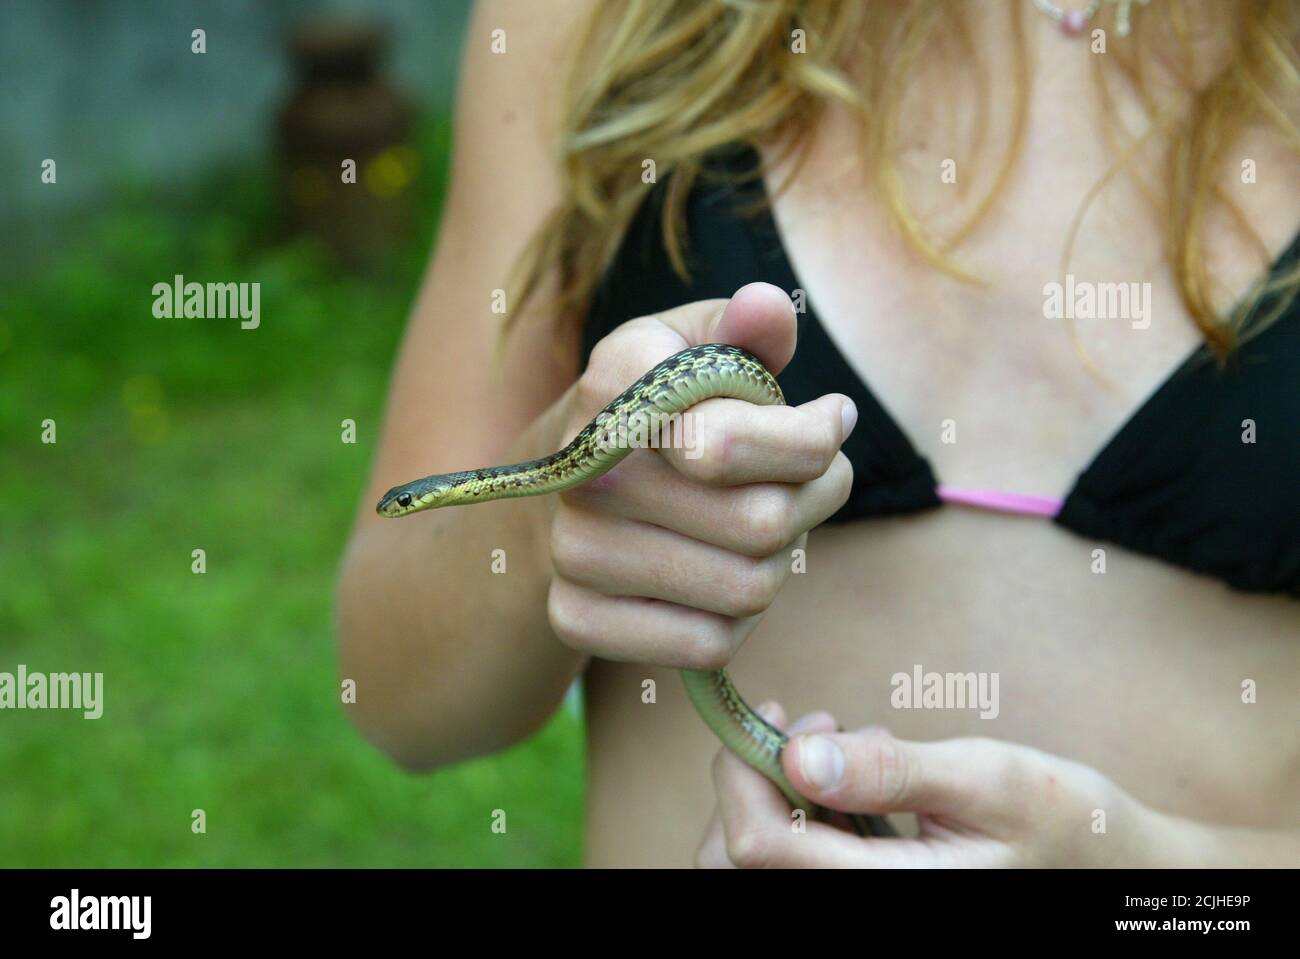 Girl holding a garter snake in her hands Stock Photo